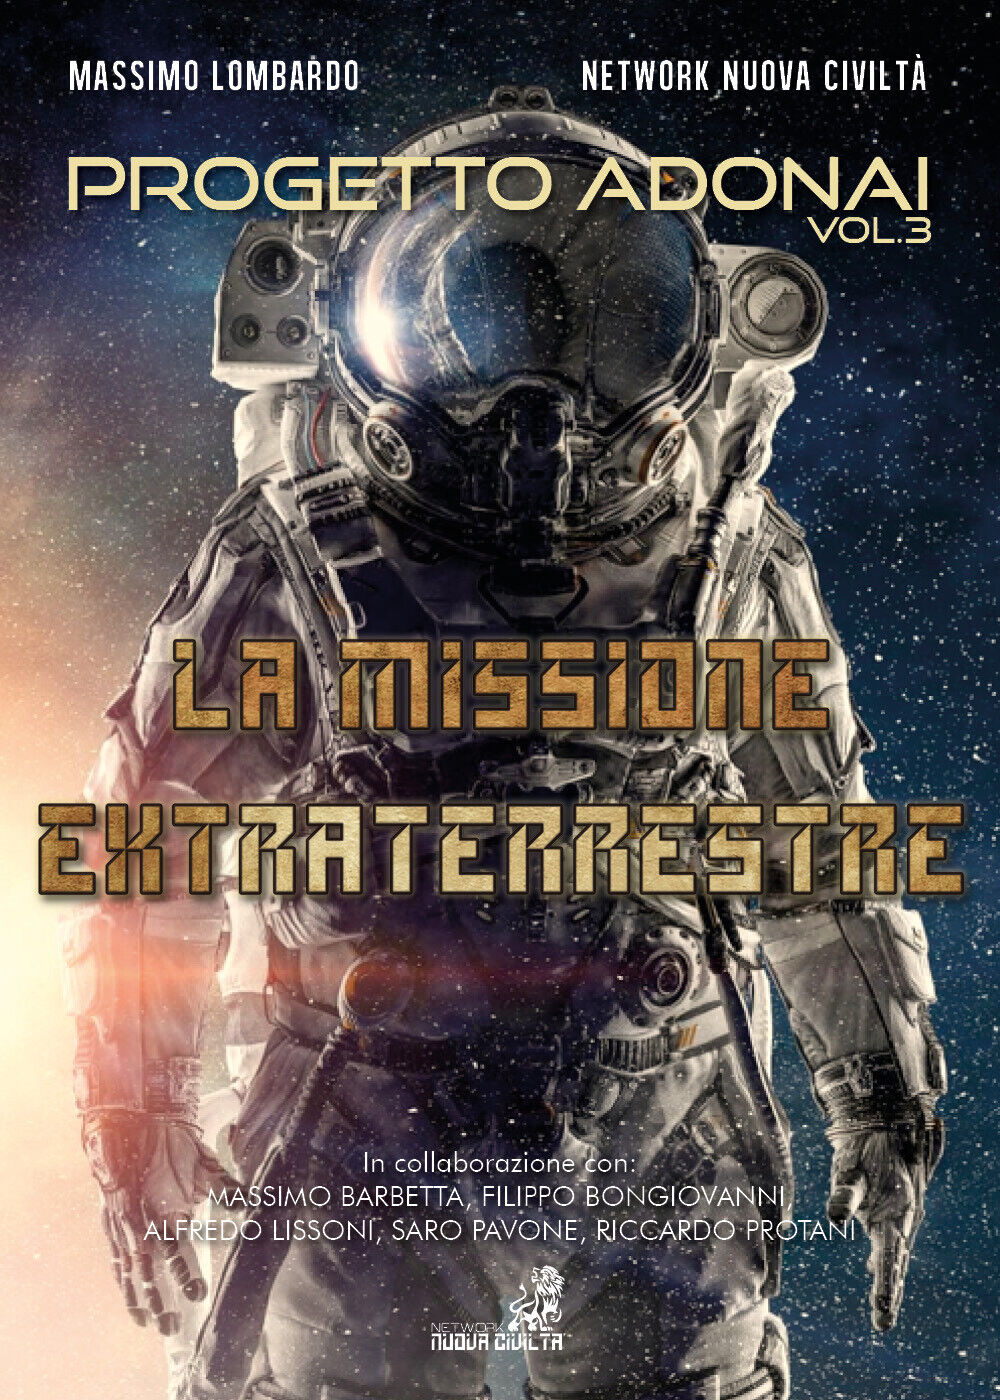 Progetto Adonai Vol.3 La Missione Extraterrestre di Massimo Lombardo - Network N